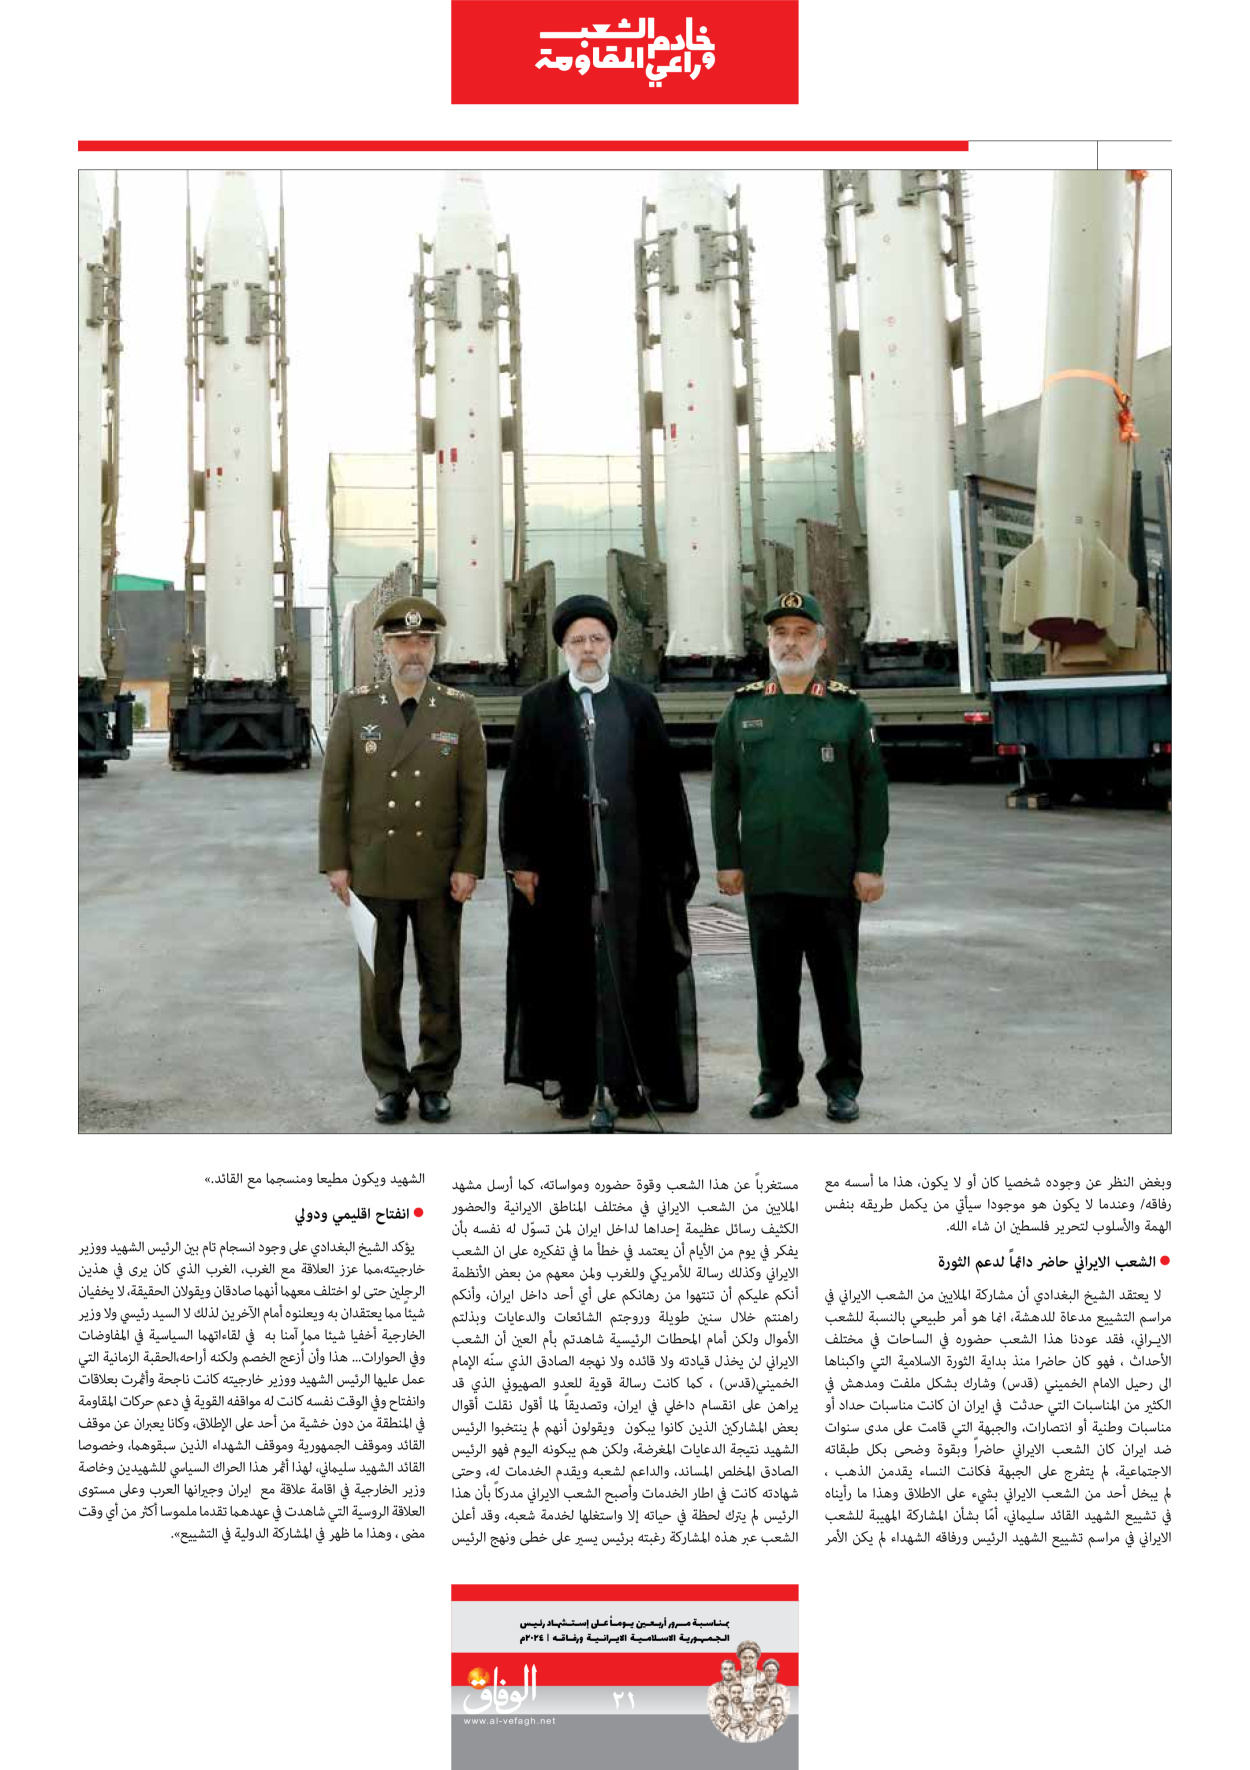 صحیفة ایران الدولیة الوفاق - ملحق ویژه نامه چهلم شهید رییسی - ٢٩ يونيو ٢٠٢٤ - الصفحة ۲۱